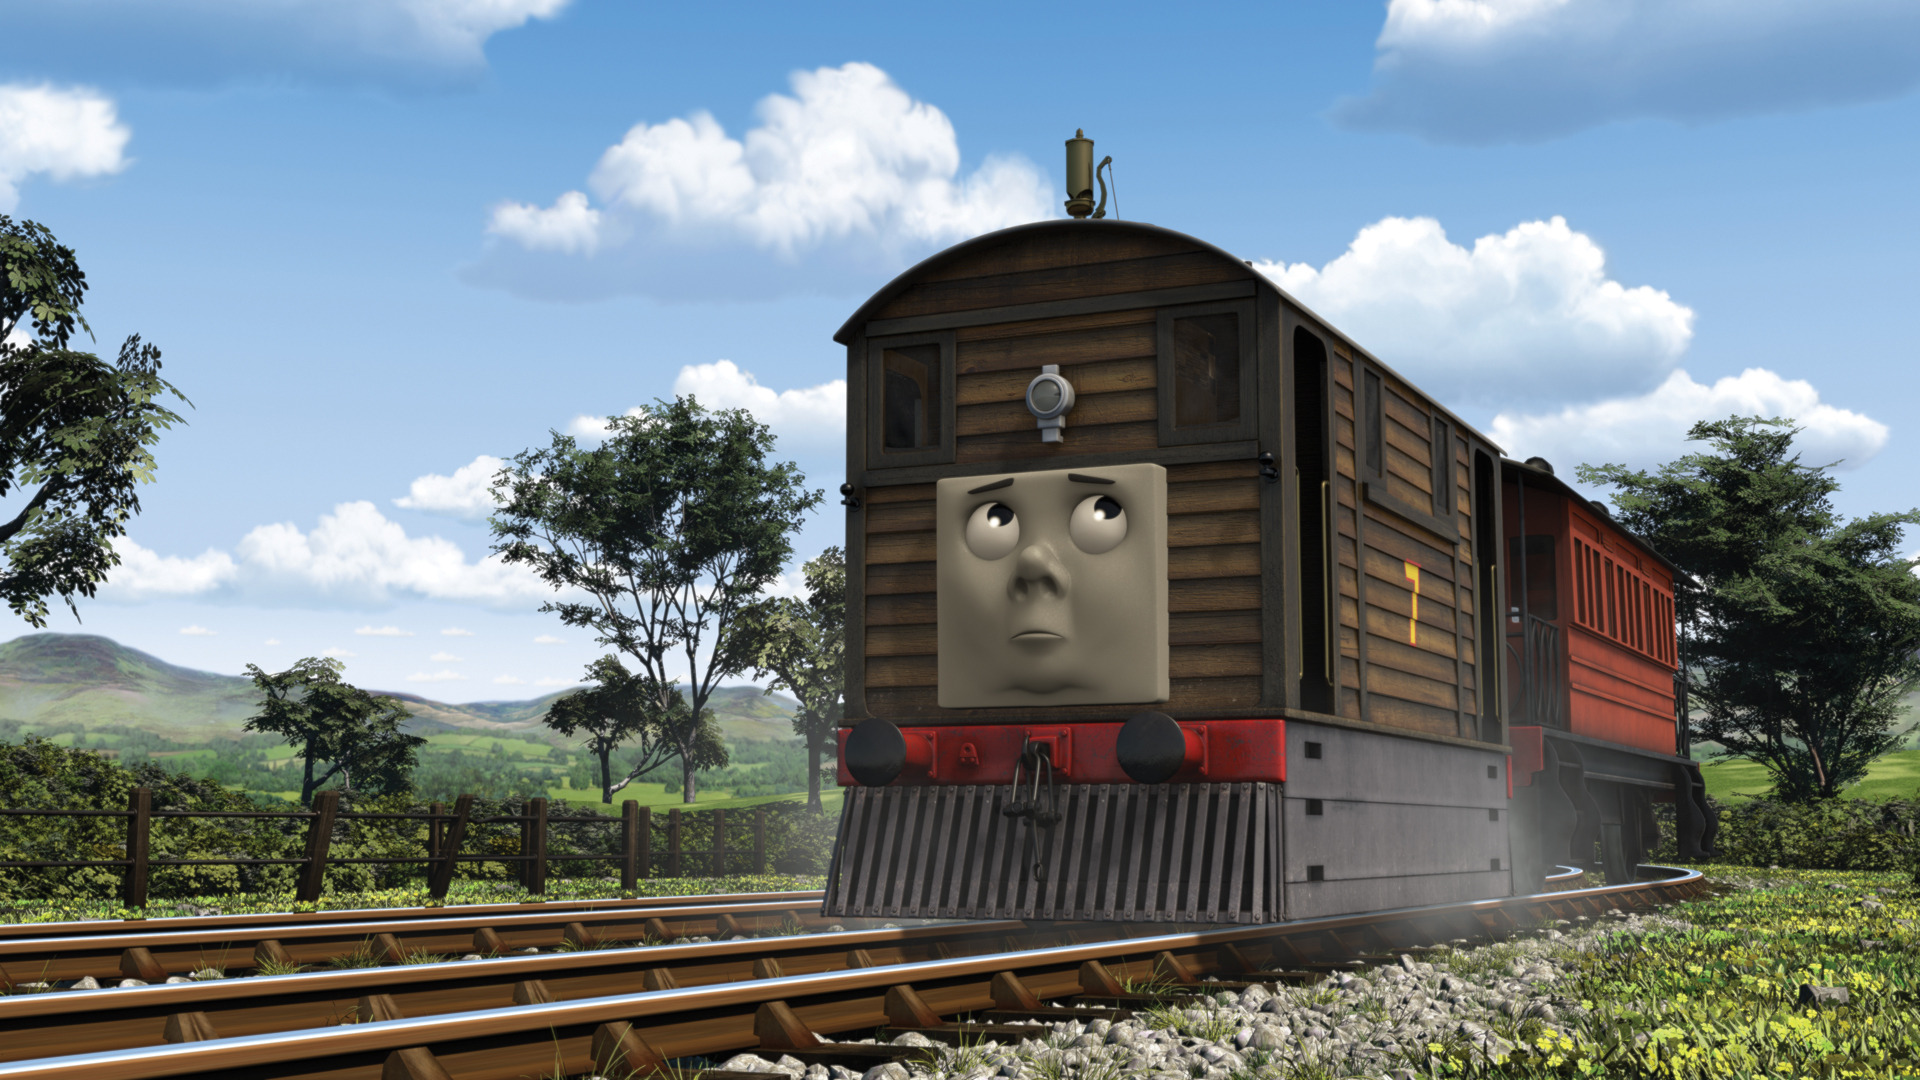 Toby's New Whistle, Thomas the Tank Engine Wikia